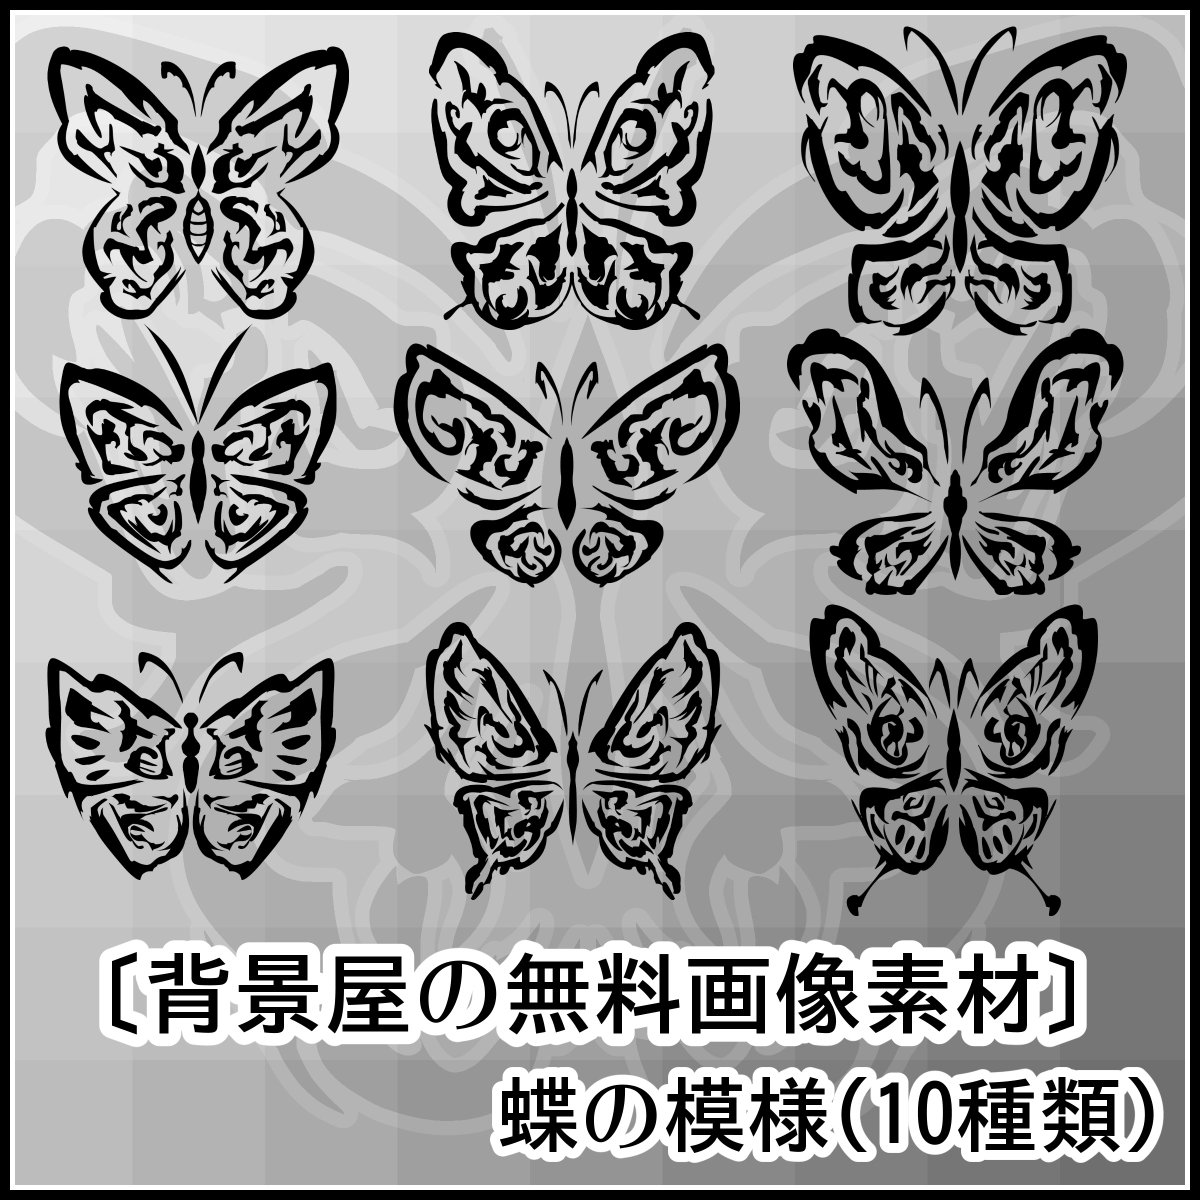 背景屋 無料背景素材をいっぱい配布中 イラスト素材 蝶の模様 １０枚 T Co Gmxorj2xu3 オシャレな蝶の模様です 背景や装飾 タトゥーなどに使ってみよう 背景屋